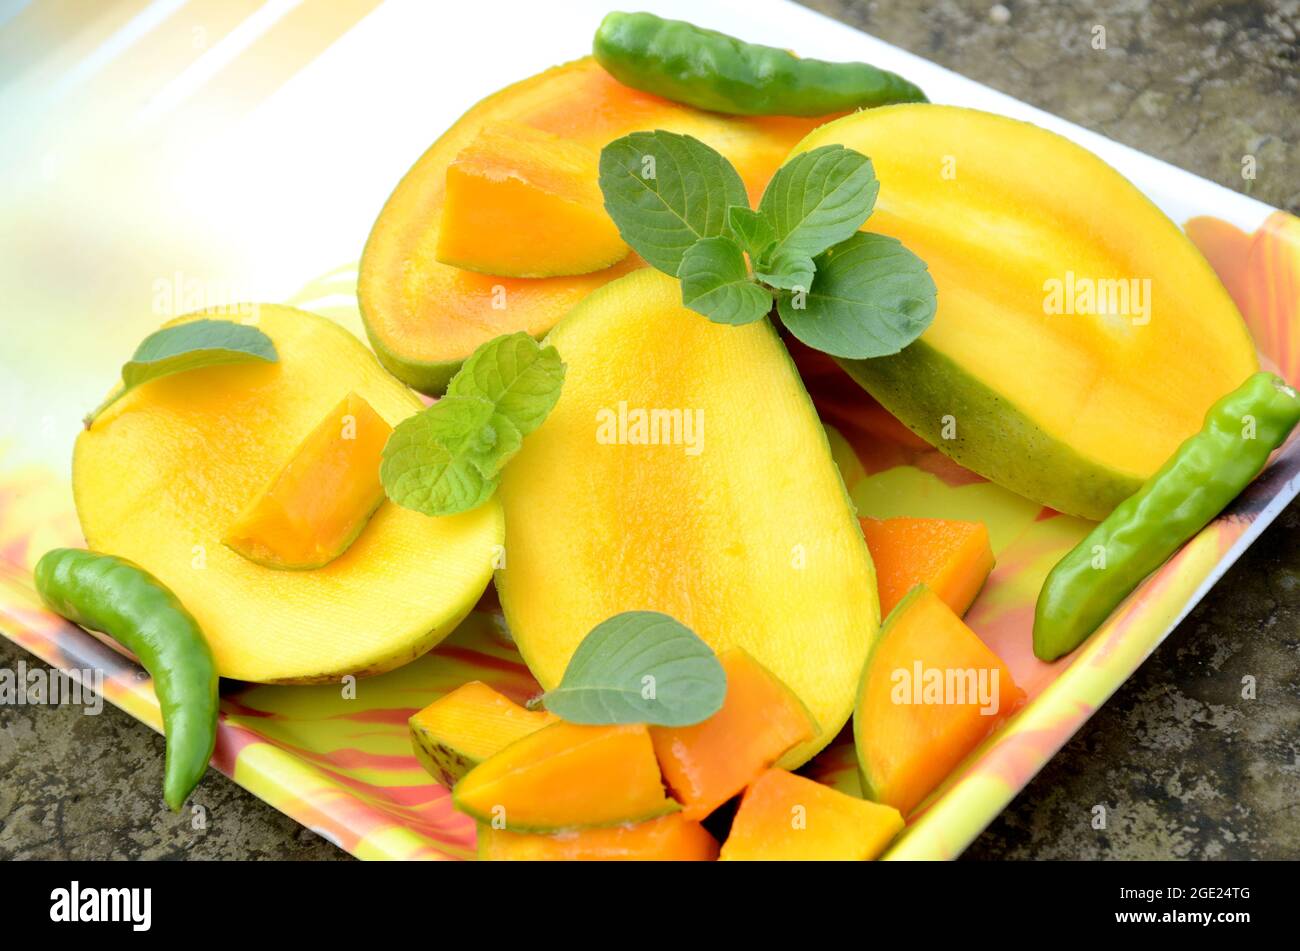 chiuda la frutta di mango giallo verde matura tagliata a fette con le foglie di menta verde e fredda nel vassoio sopra fuori di fuoco sfondo marrone grigio. Foto Stock